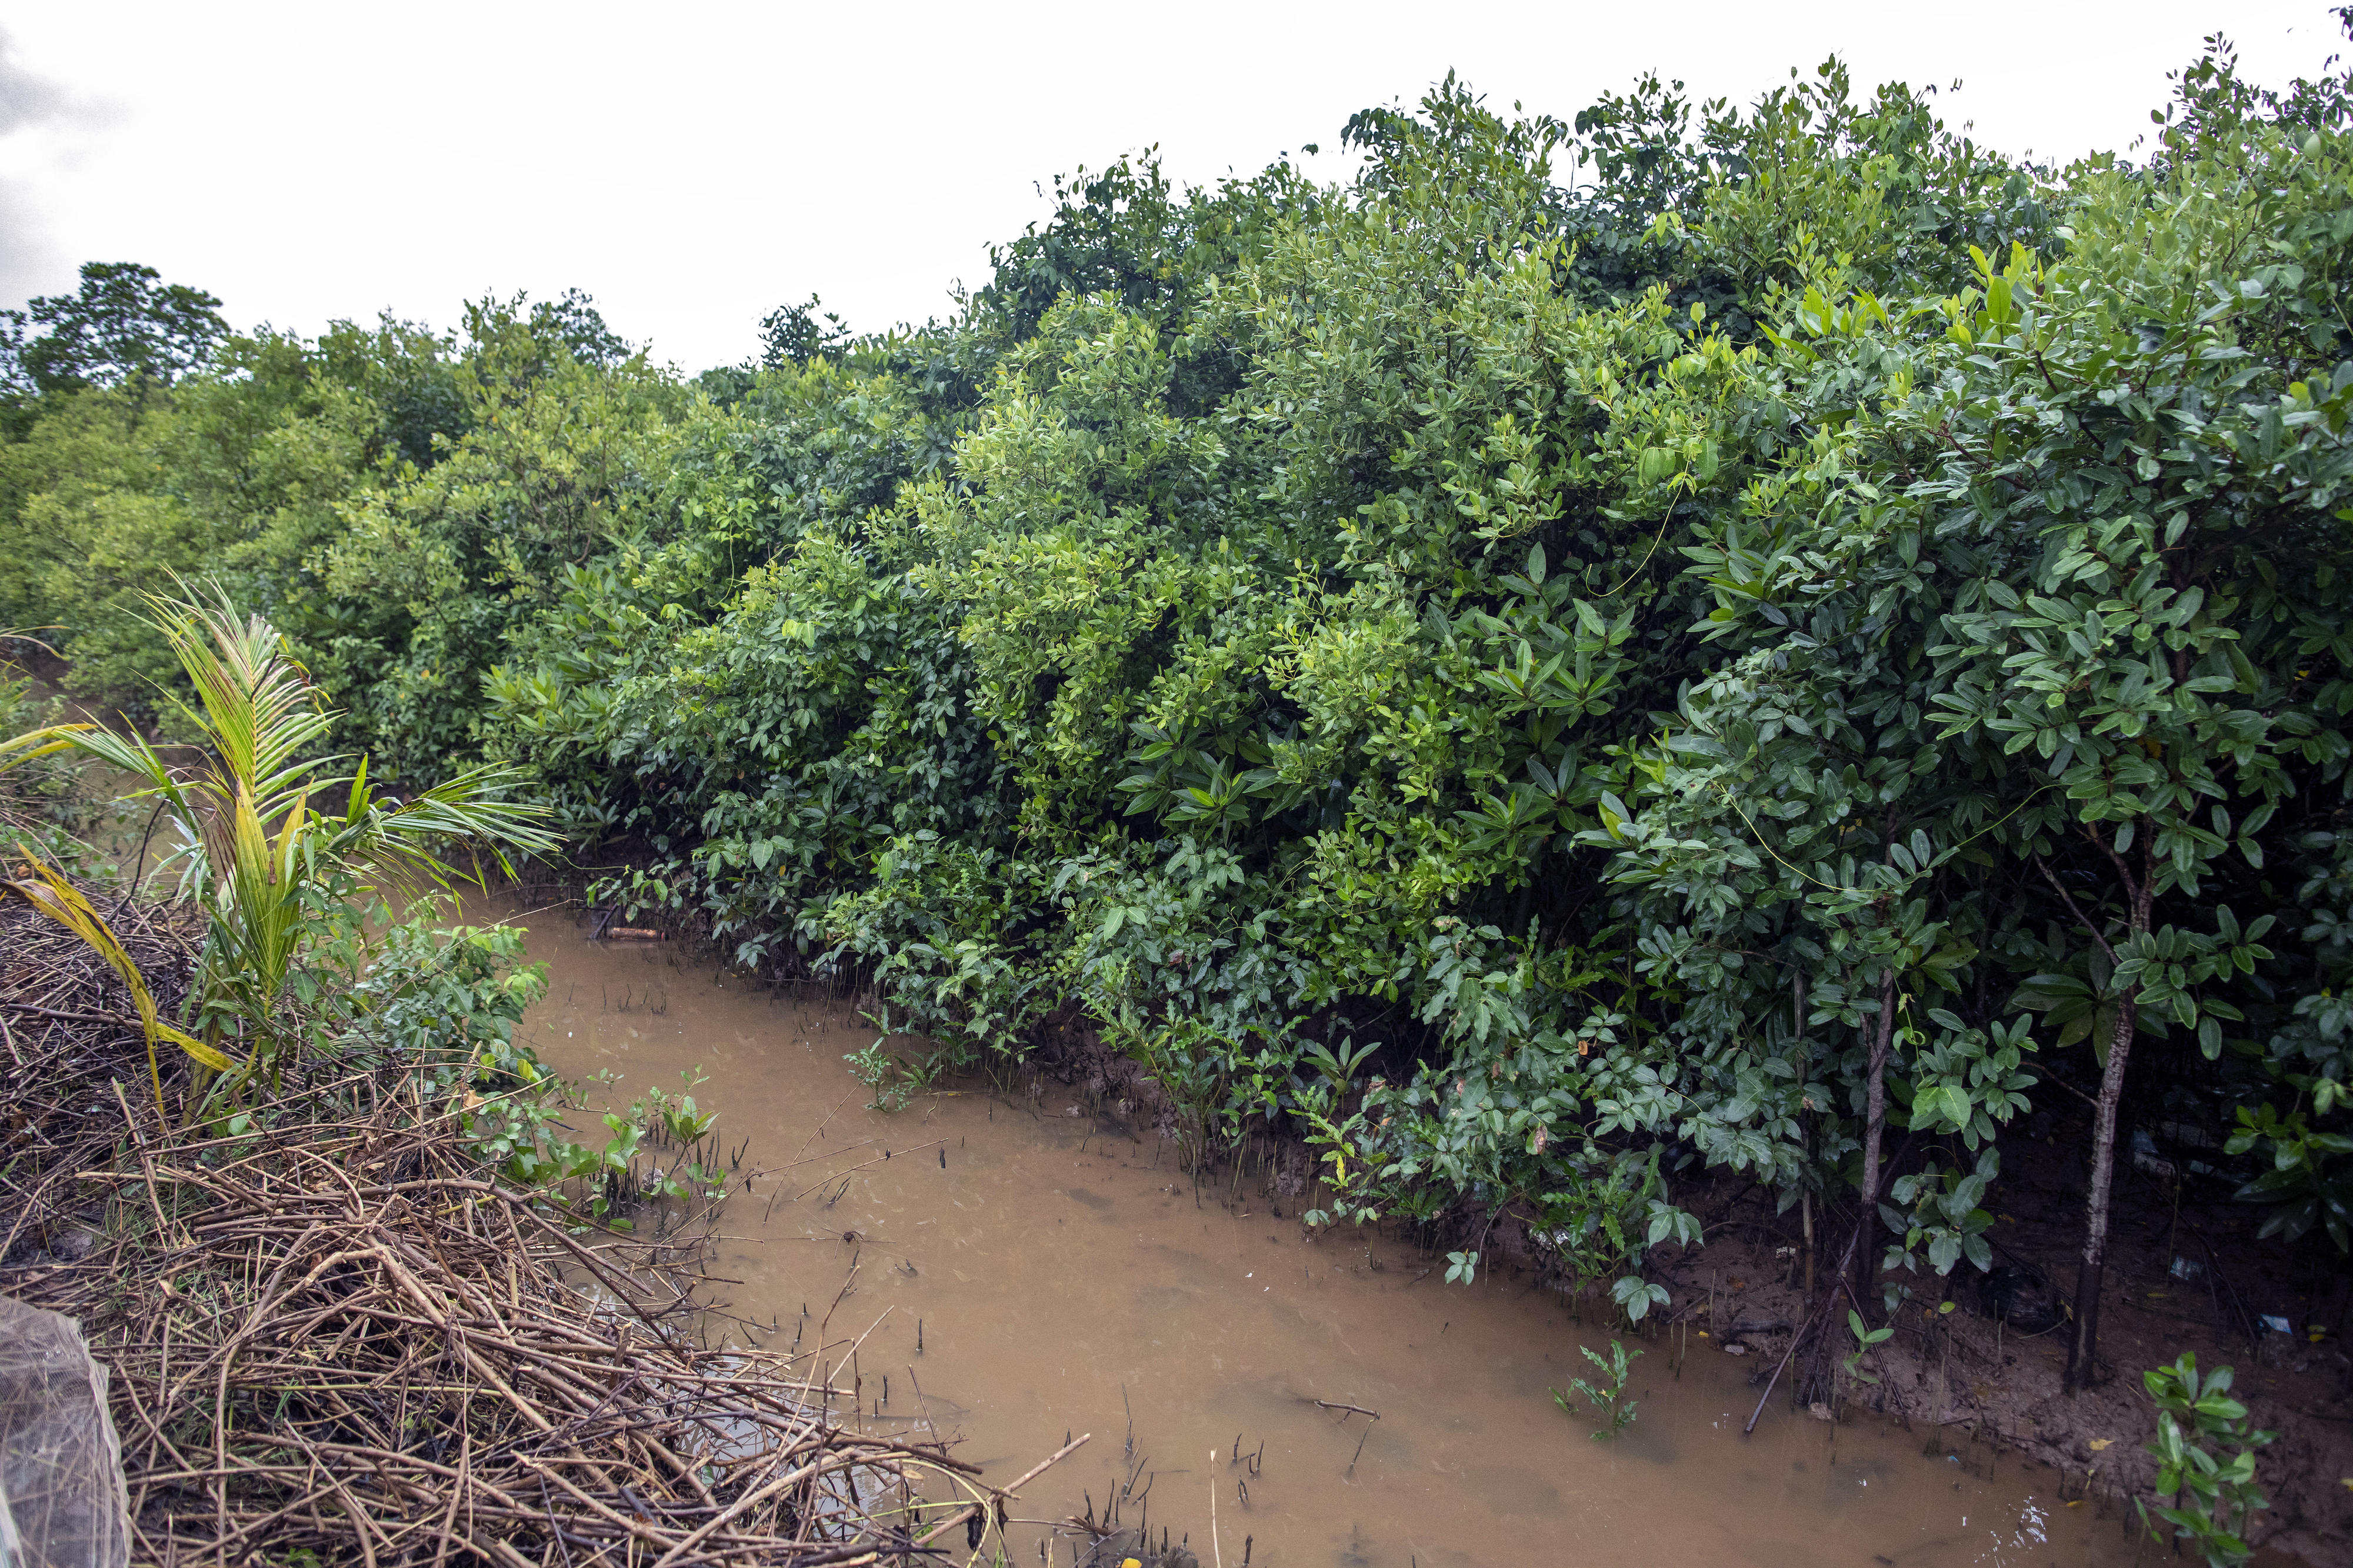 Mangrove forest in Viet Nam